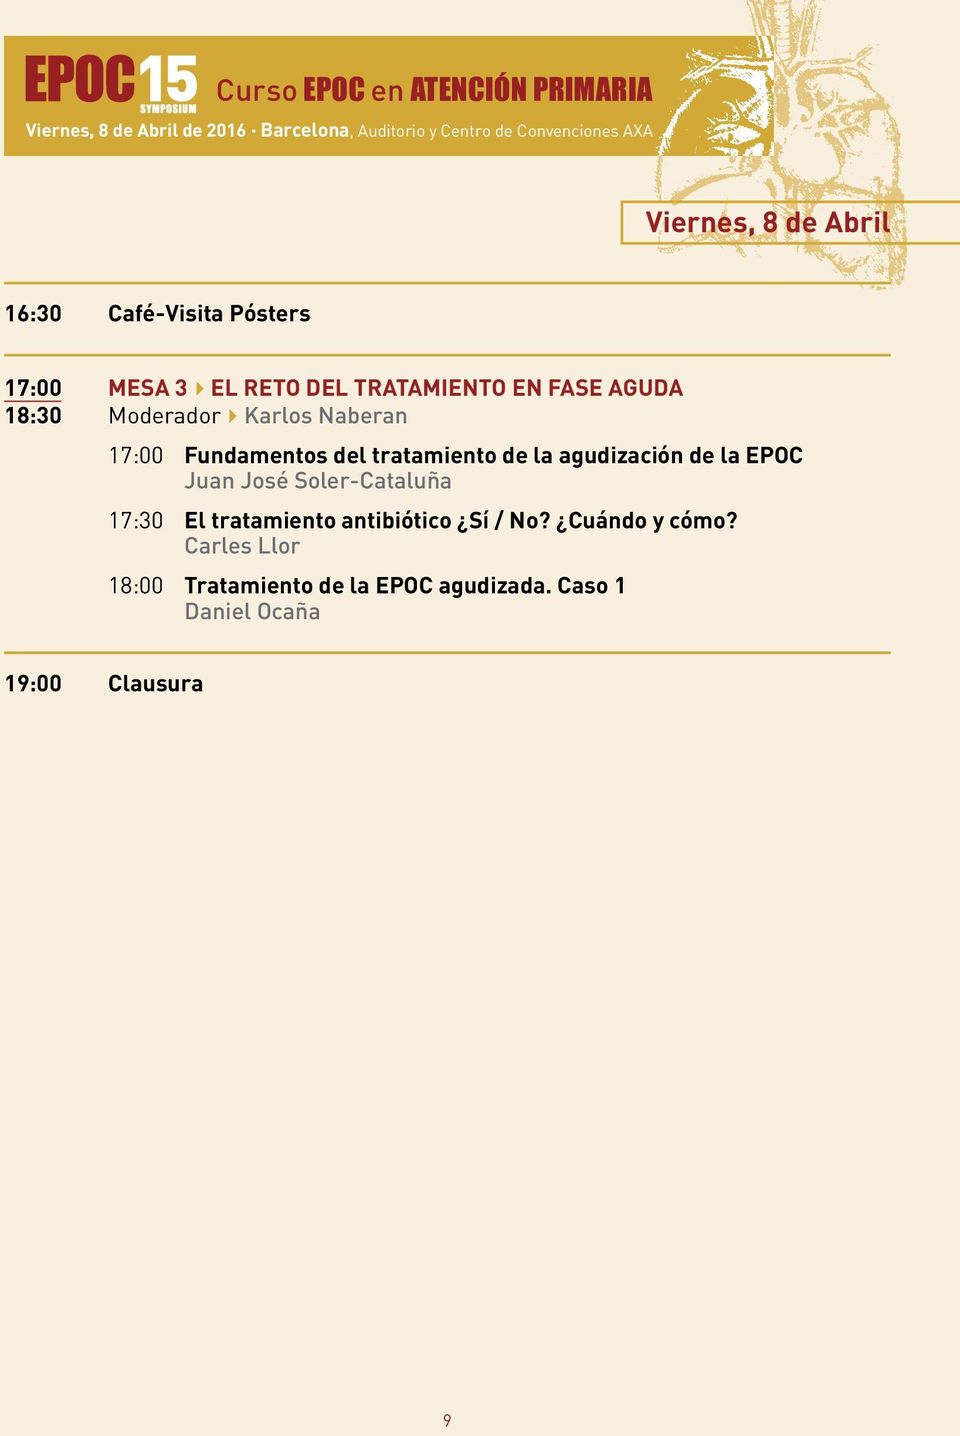 Moderador4Karlos Naberan 17:00 Fundamentos del tratamiento de la agudización de la EPOC Juan José Soler-Cataluña